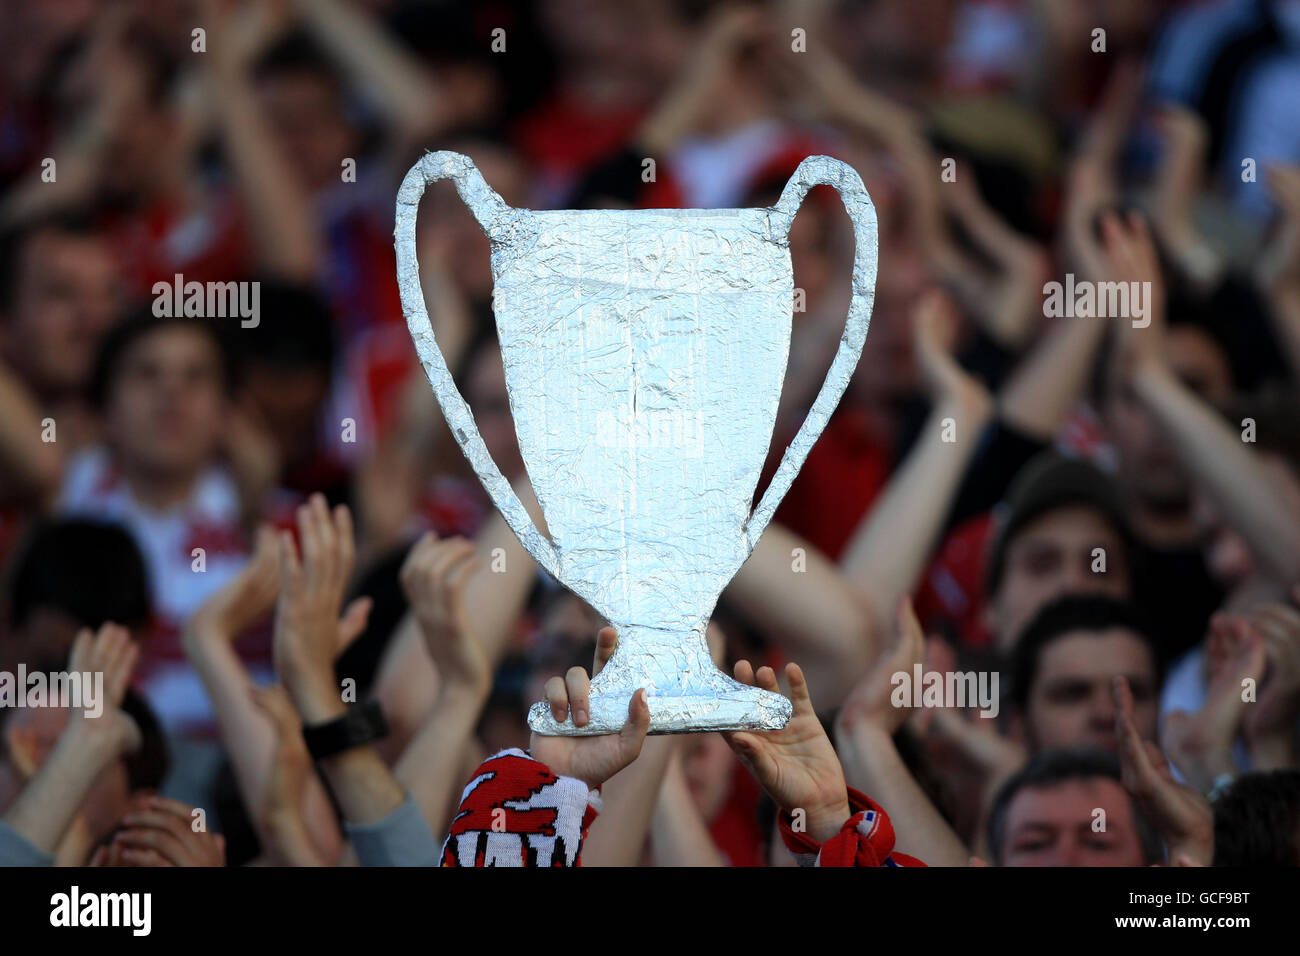 Football - Ligue des champions de l'UEFA - semi finale - deuxième étape - Lyon / Bayern Munich - Municipal de Gerland.Un fan du Bayern Munich détient une coupe du trophée de la ligue des champions dans les tribunes Banque D'Images